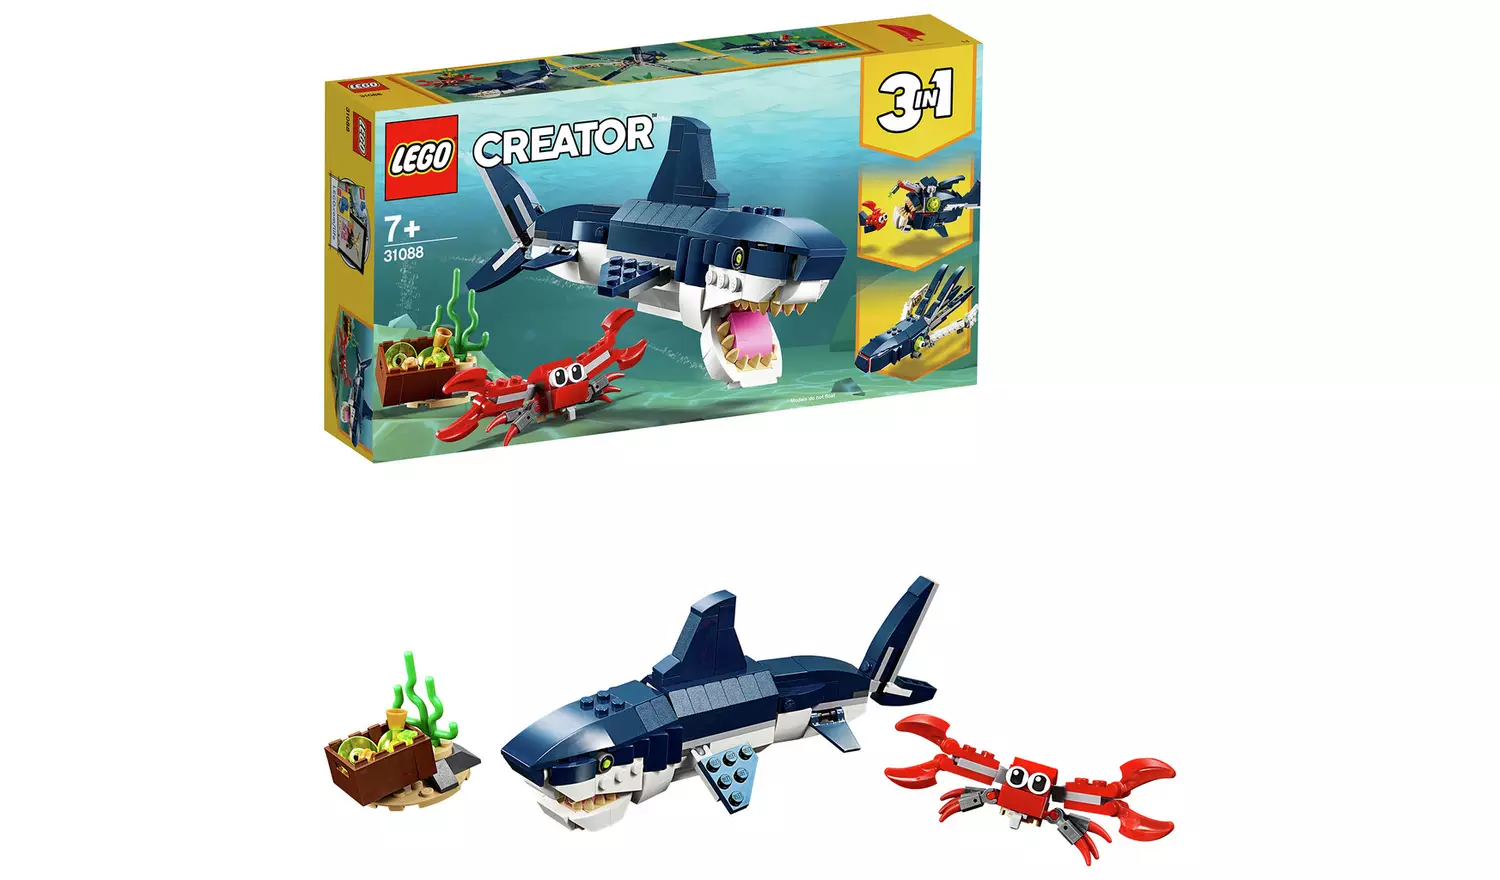 LEGO Creator Deep Sea Creatures Toy Shark Playset – 31088886/3342